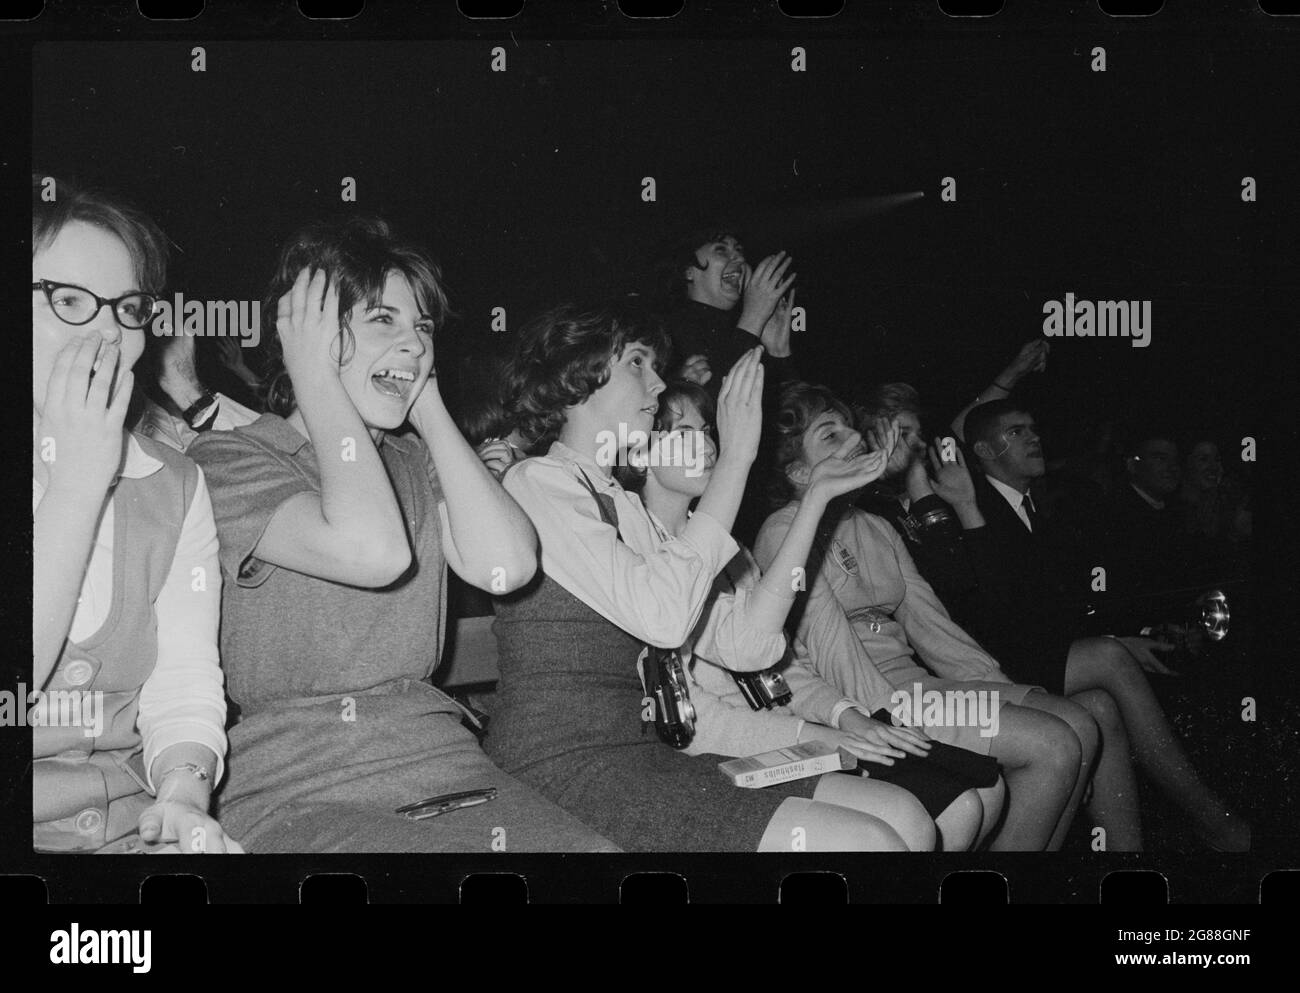 Beatles fans au Washington Coliseum, le 11 février 1964. Crier et crier les femmes dans le public. Trikosko, Marion S., photographe. Banque D'Images